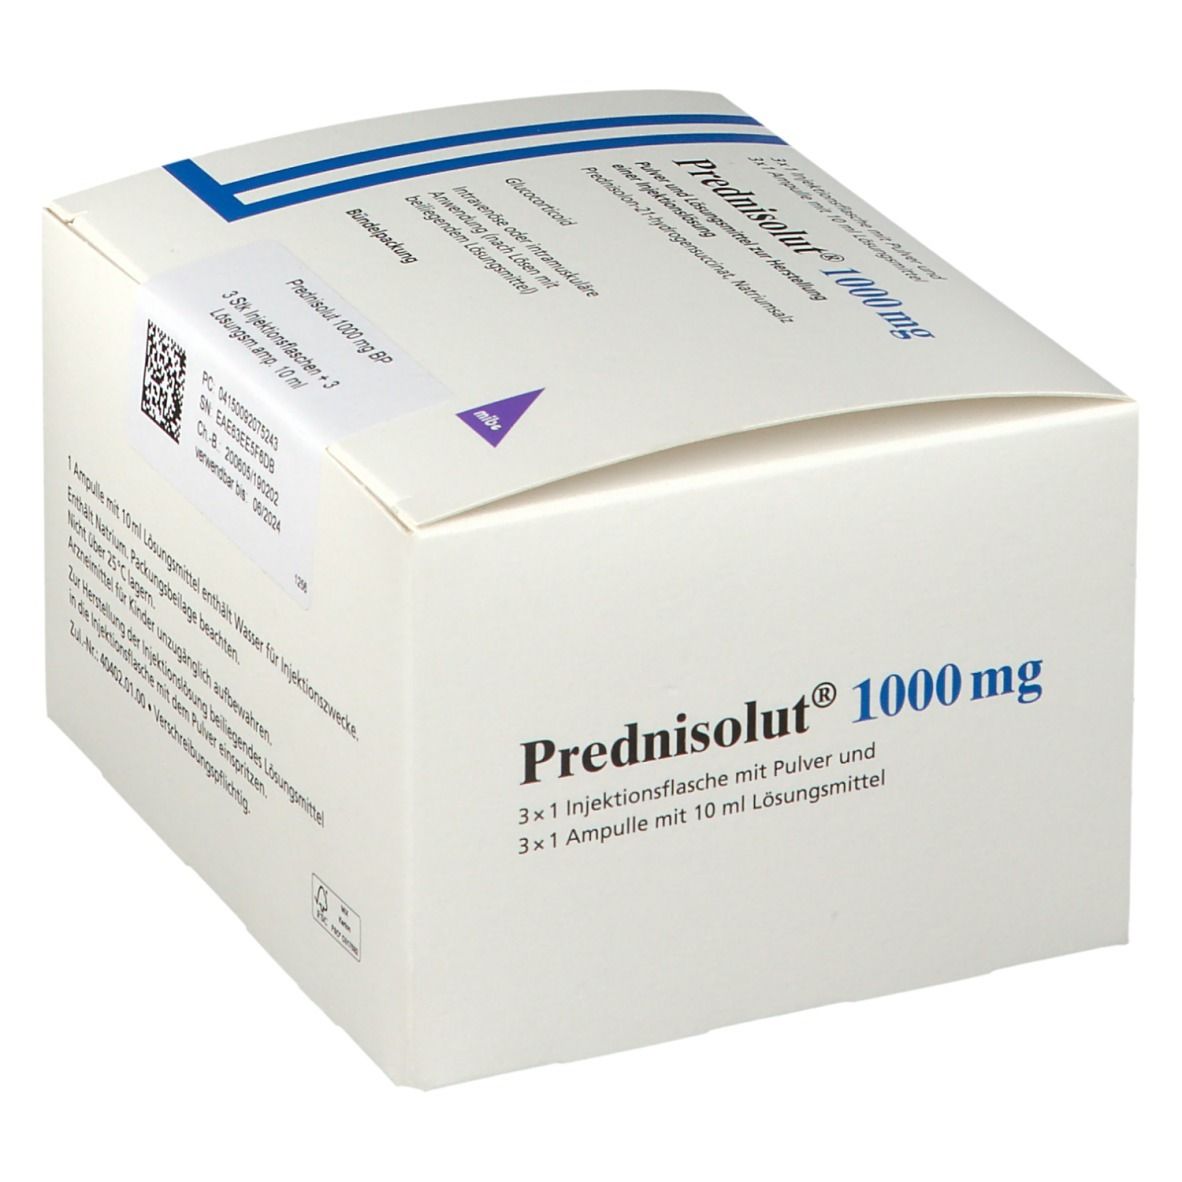 Prednisolut 1000 mg